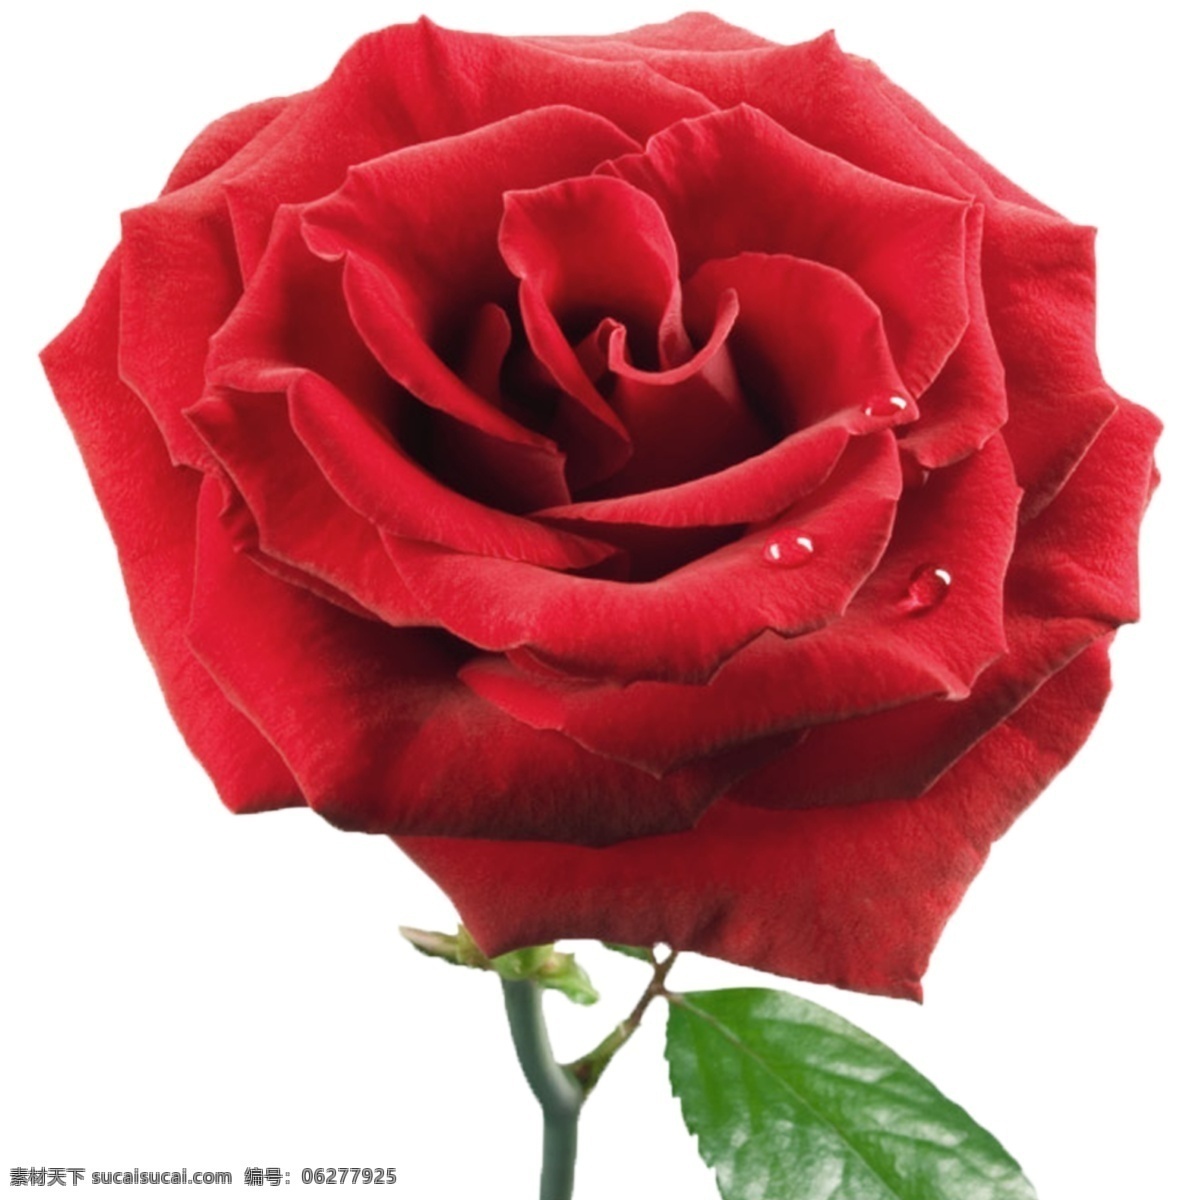 红火玫瑰 玫瑰 花朵 刺 单个